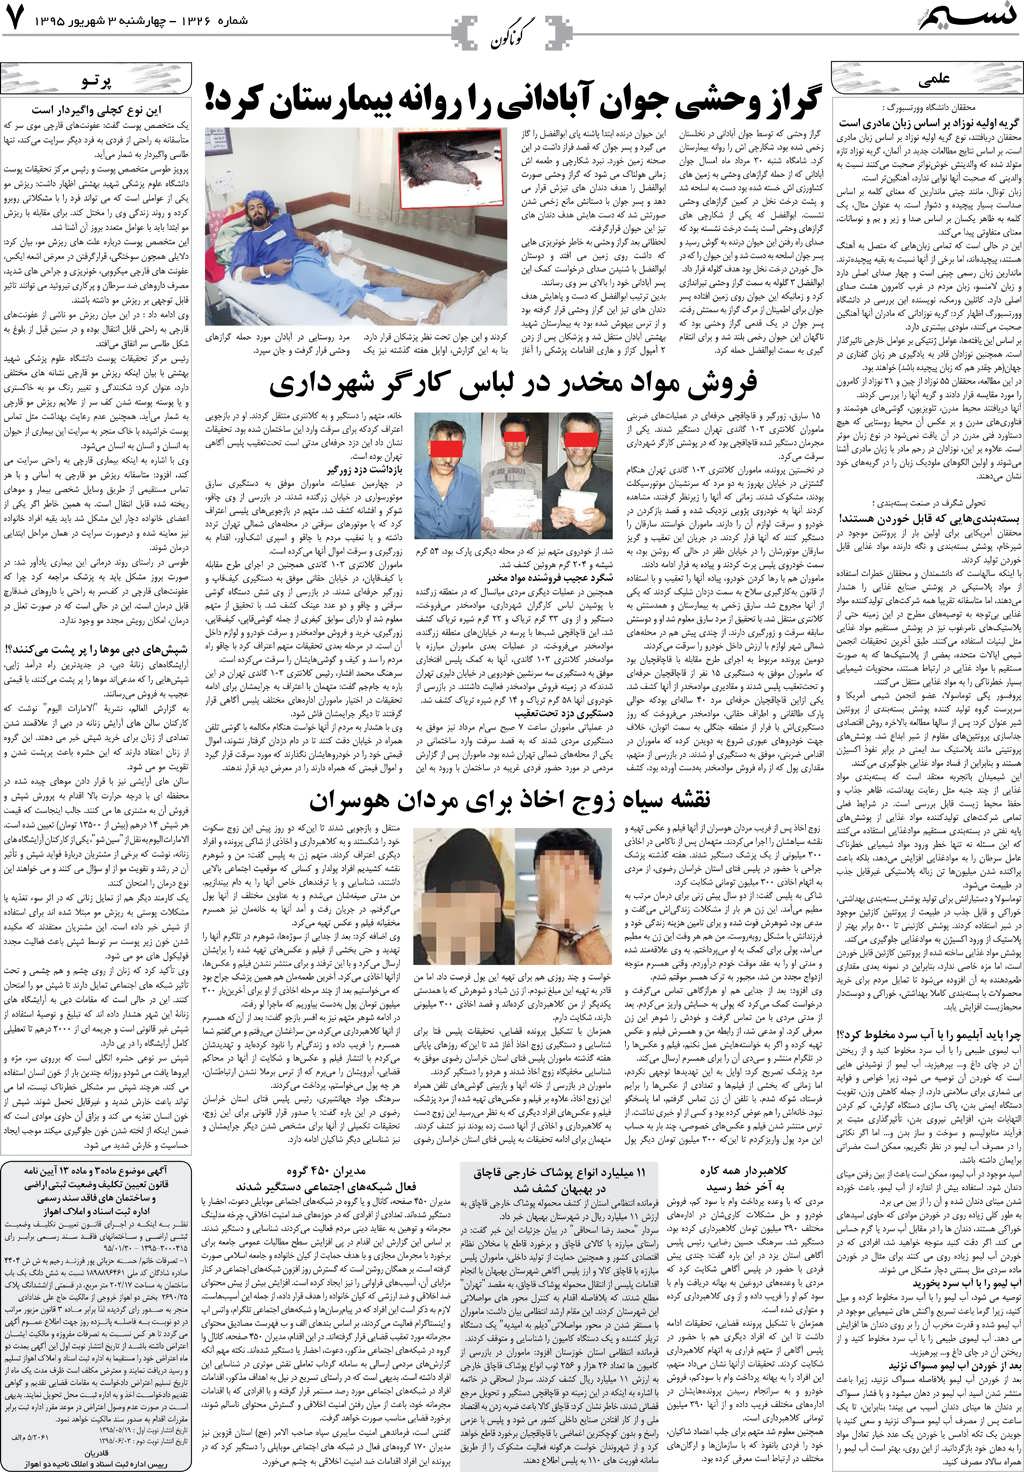 صفحه گوناگون روزنامه نسیم شماره 1326